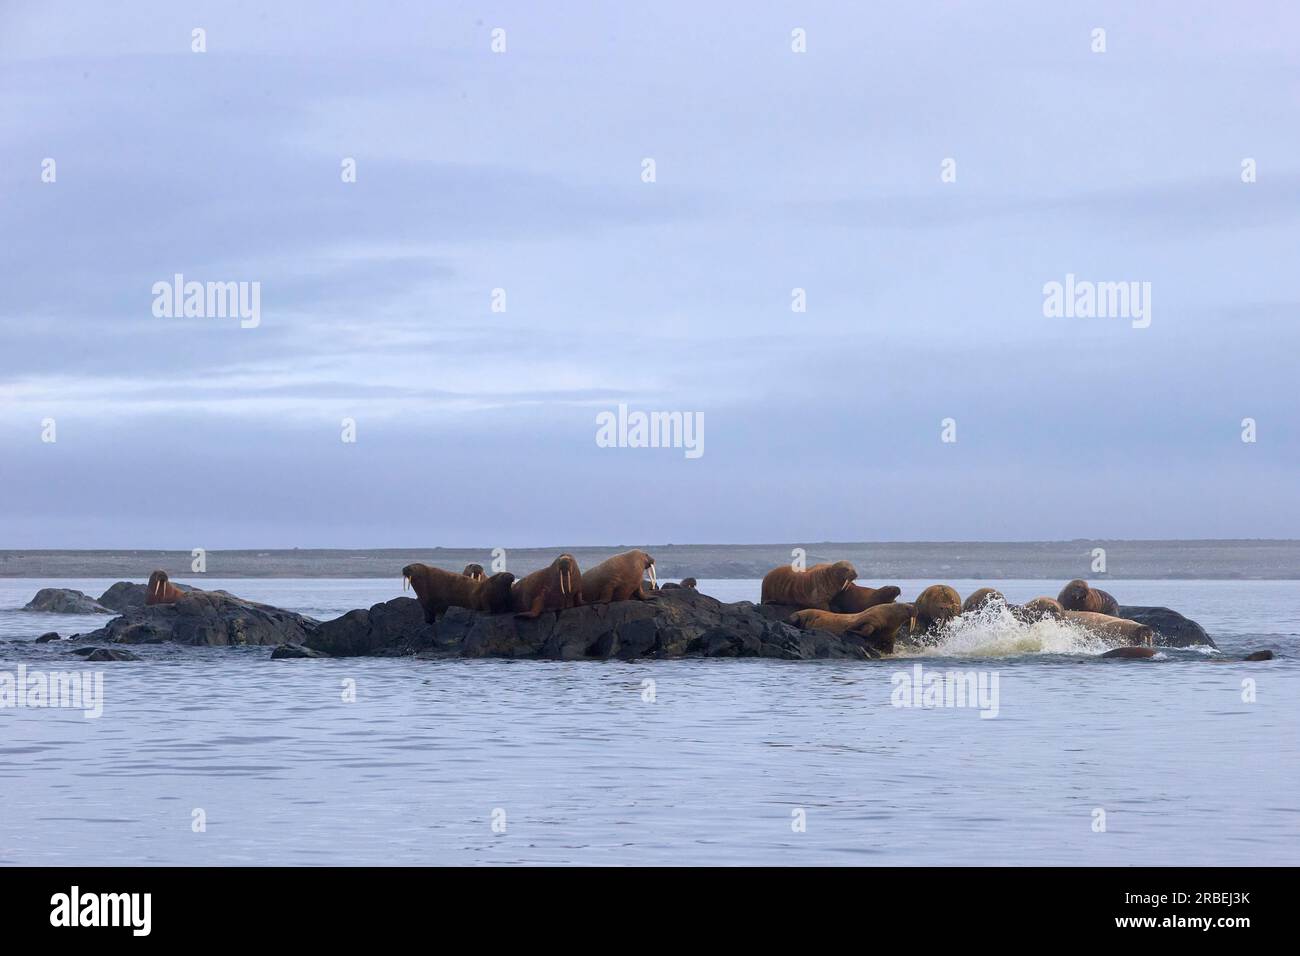 Eine Gemeinde von Walrossen, die in der Arktis auf Felsen gezogen wurden Stockfoto